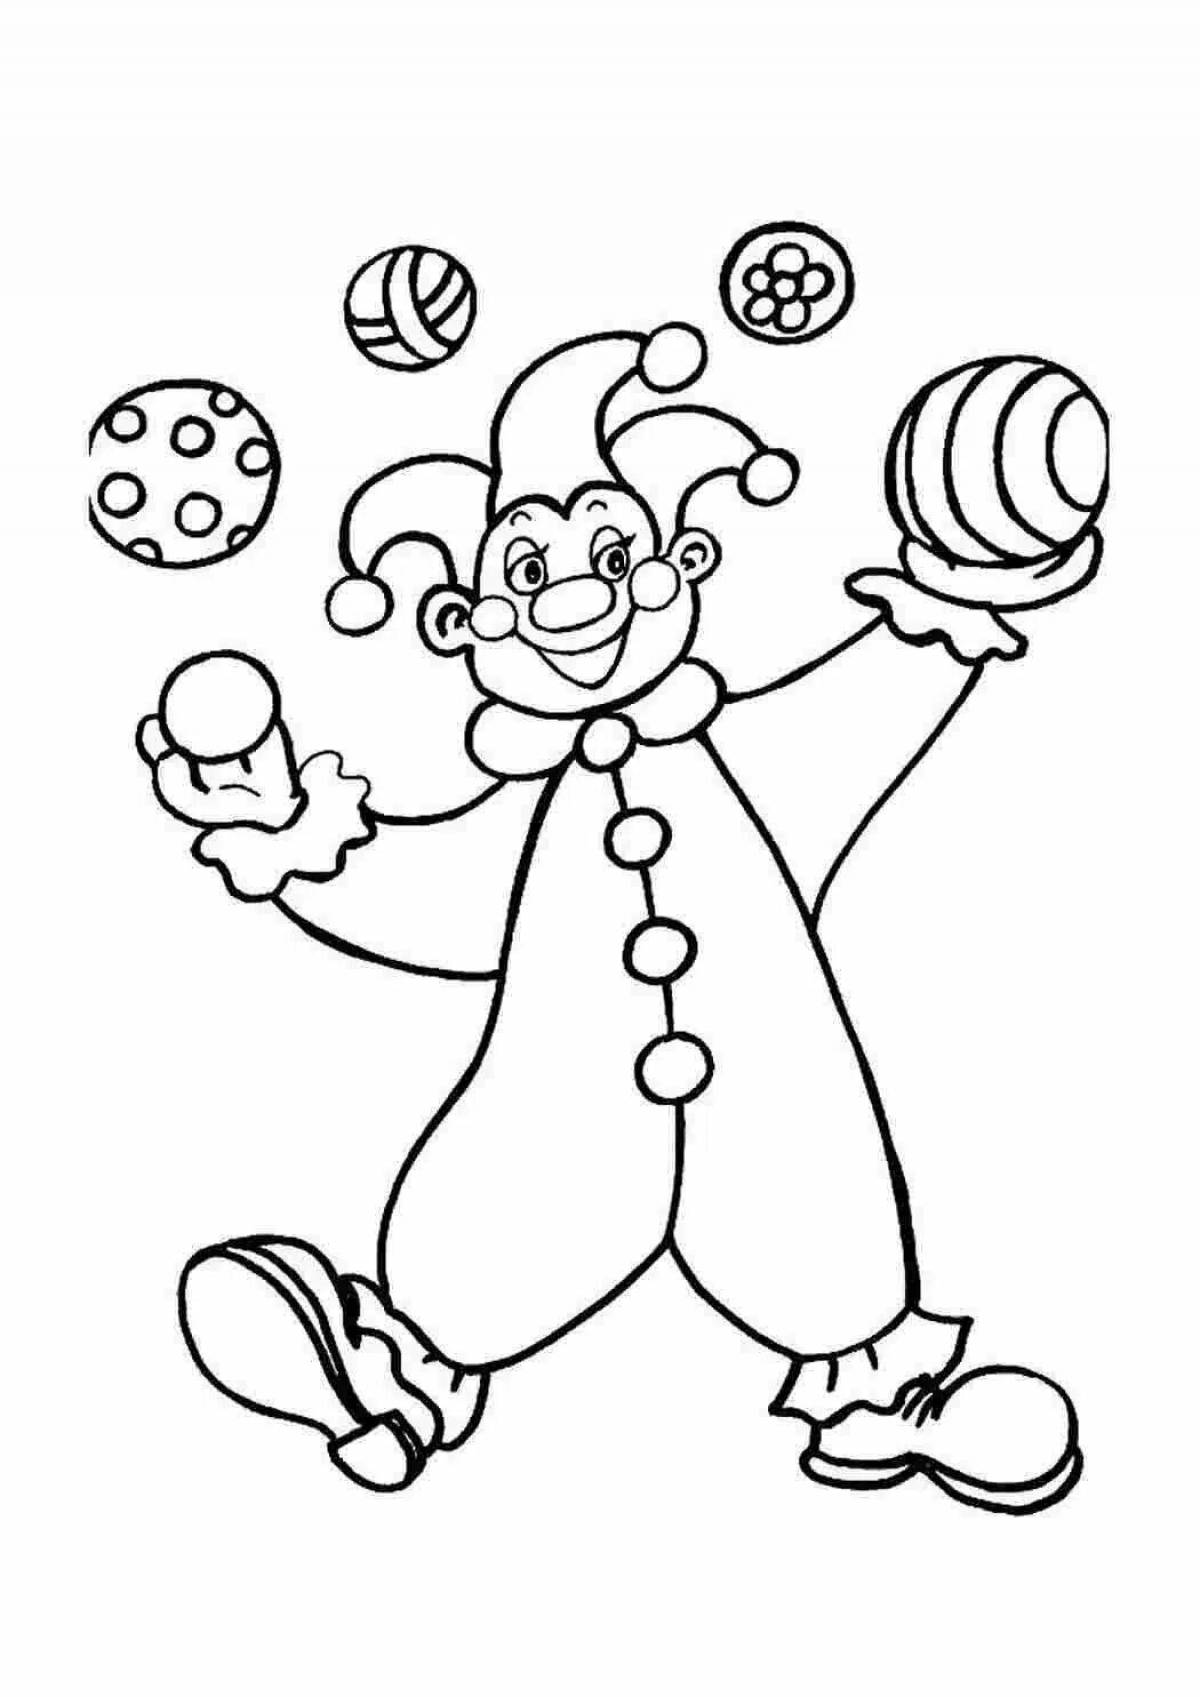 Раскраска клоун для детей 3 4 лет. Клоун раскраска. Клоун для раскрашивания детям. Клоун раскраска для детей. Раскраска весёлый клоун для детей.